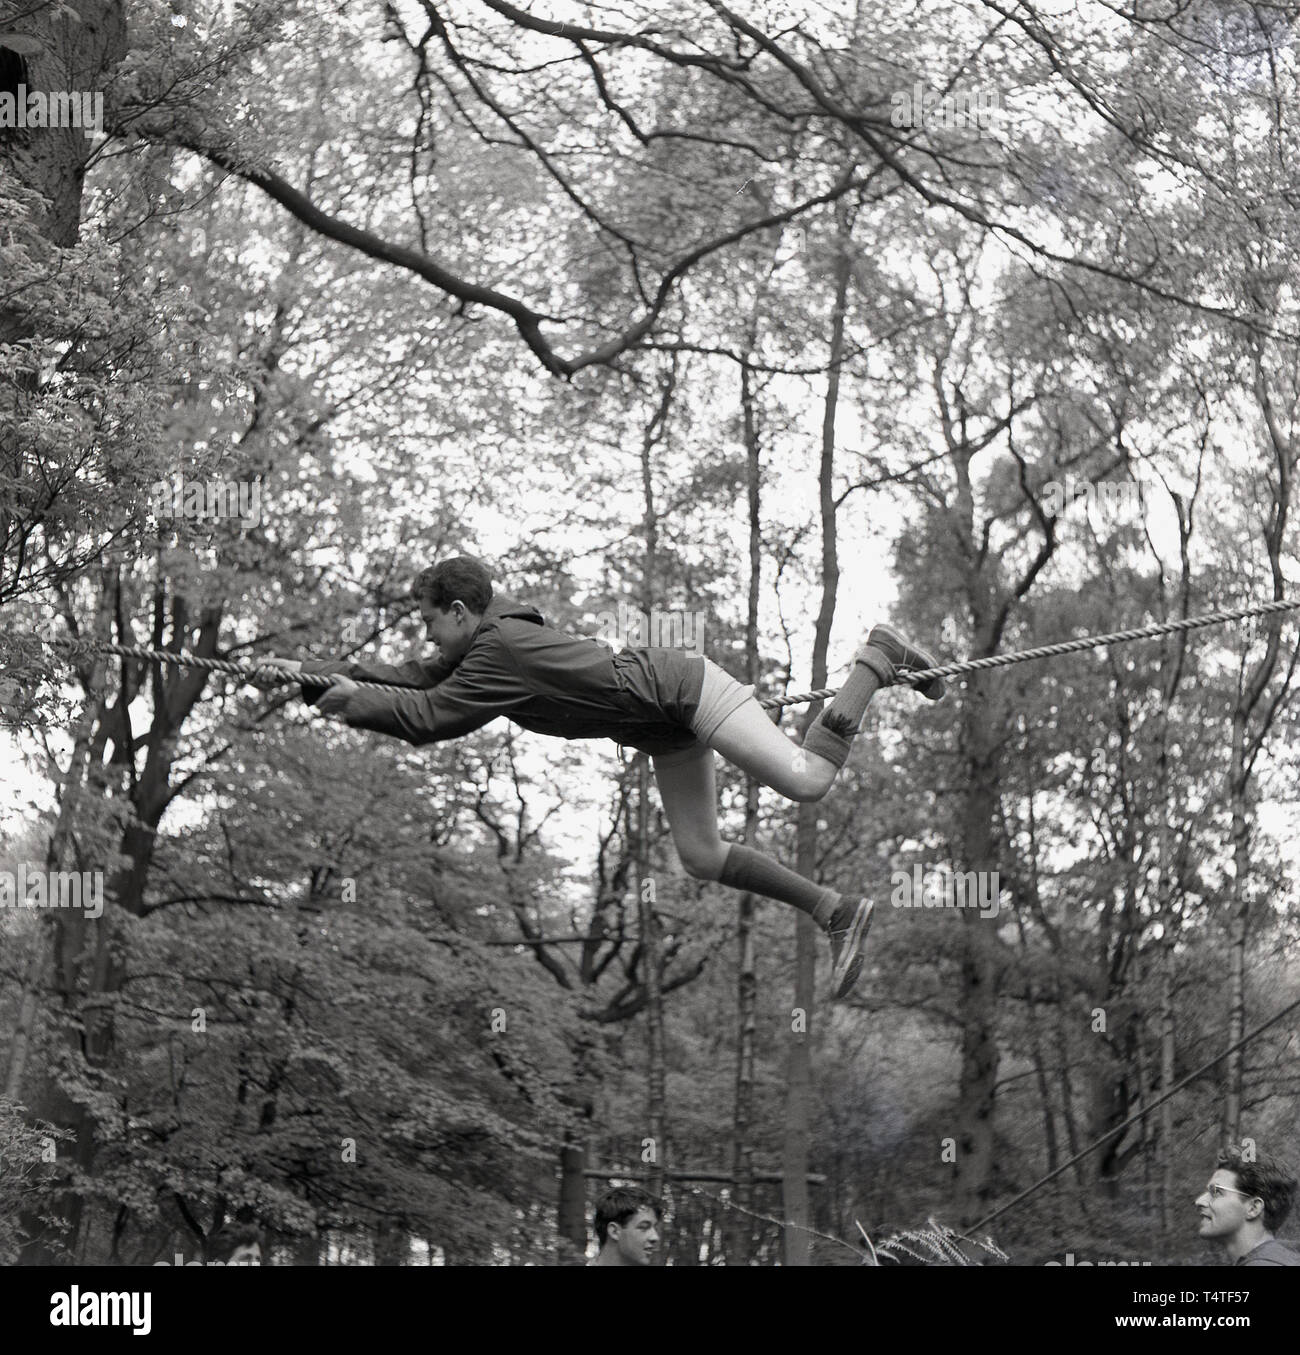 Années 1960, historique, un jeune scout aventure couchée sur une corde à l'aide de ses mains et pieds de manœuvre lui-même à travers une clairière entre deux arbres, England, UK. Les jeunes dans les scouts prennent part à de nombreuses activités de plein air qui contribuent à développer leur caractère et à la vie quotidienne. Banque D'Images